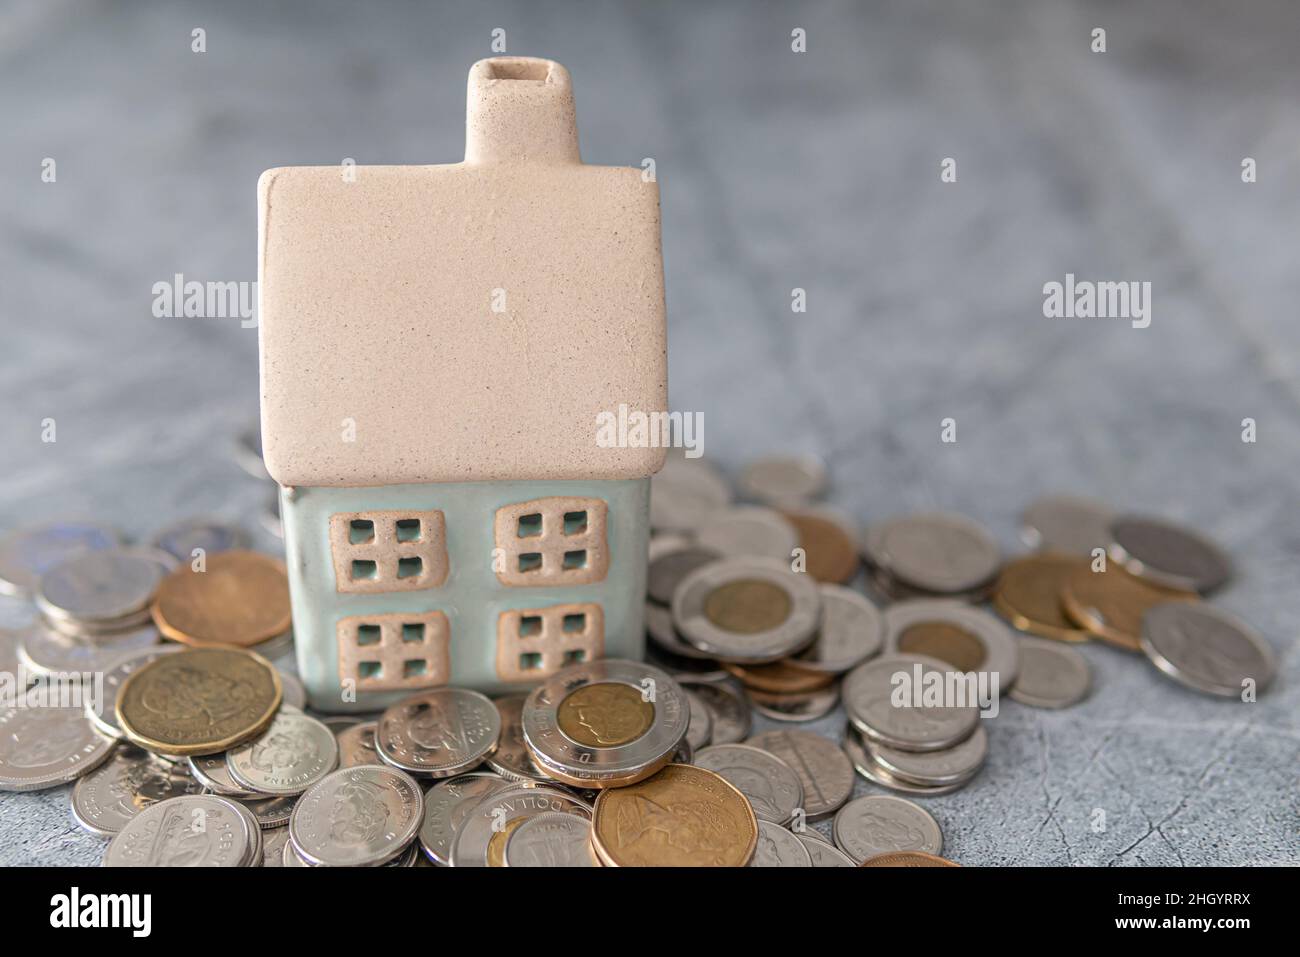 Modellhaus mit Münzstapel - Hausfinanzierung Hypothekenkonzept Stockfoto